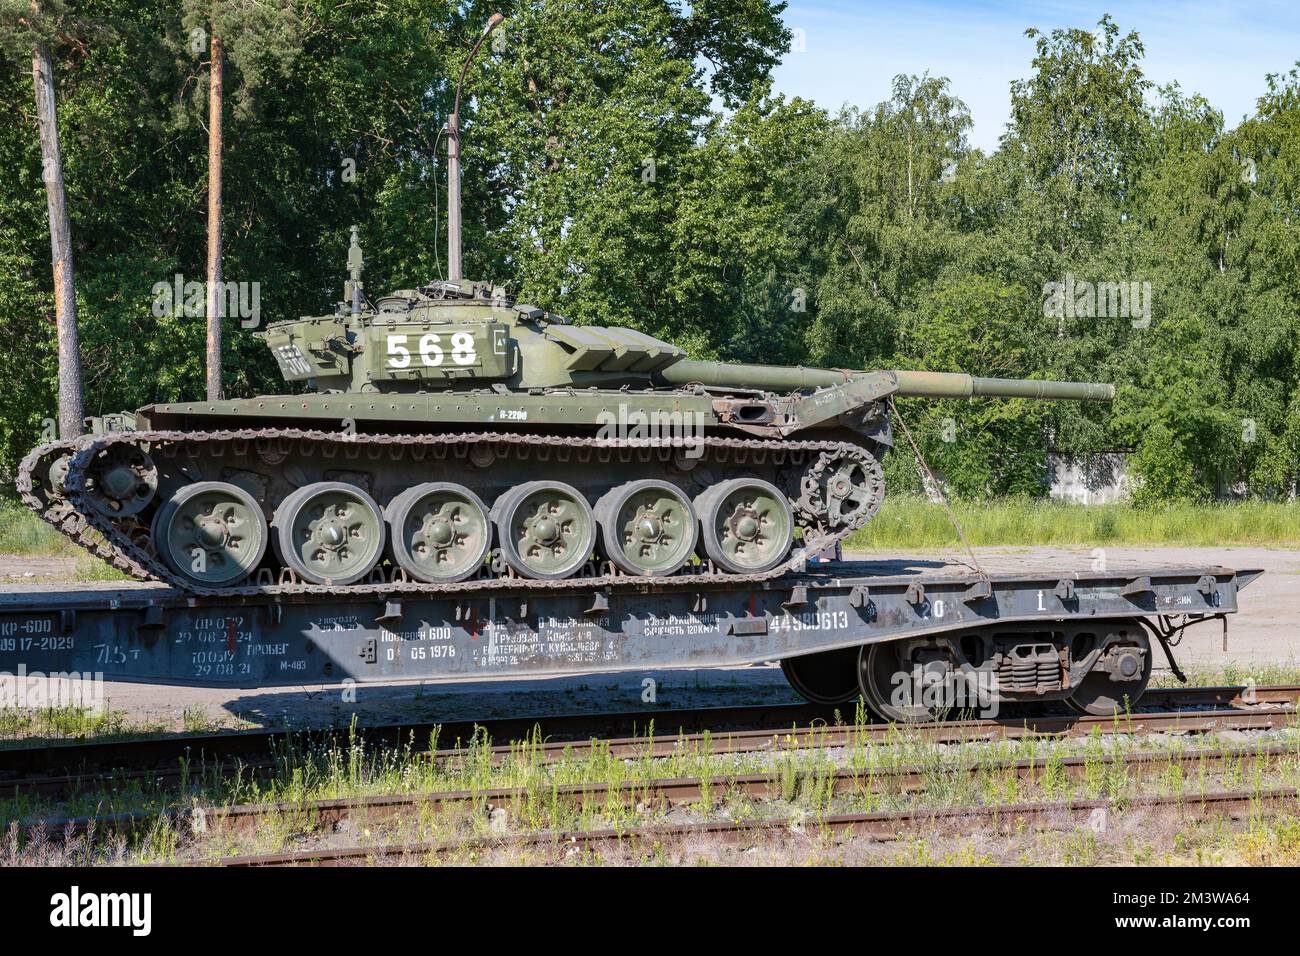 REGION LENINGRAD, RUSSLAND - 02. JULI 2022: Russischer Panzer an einem sonnigen Sommertag auf dem Bahnsteig Stockfoto